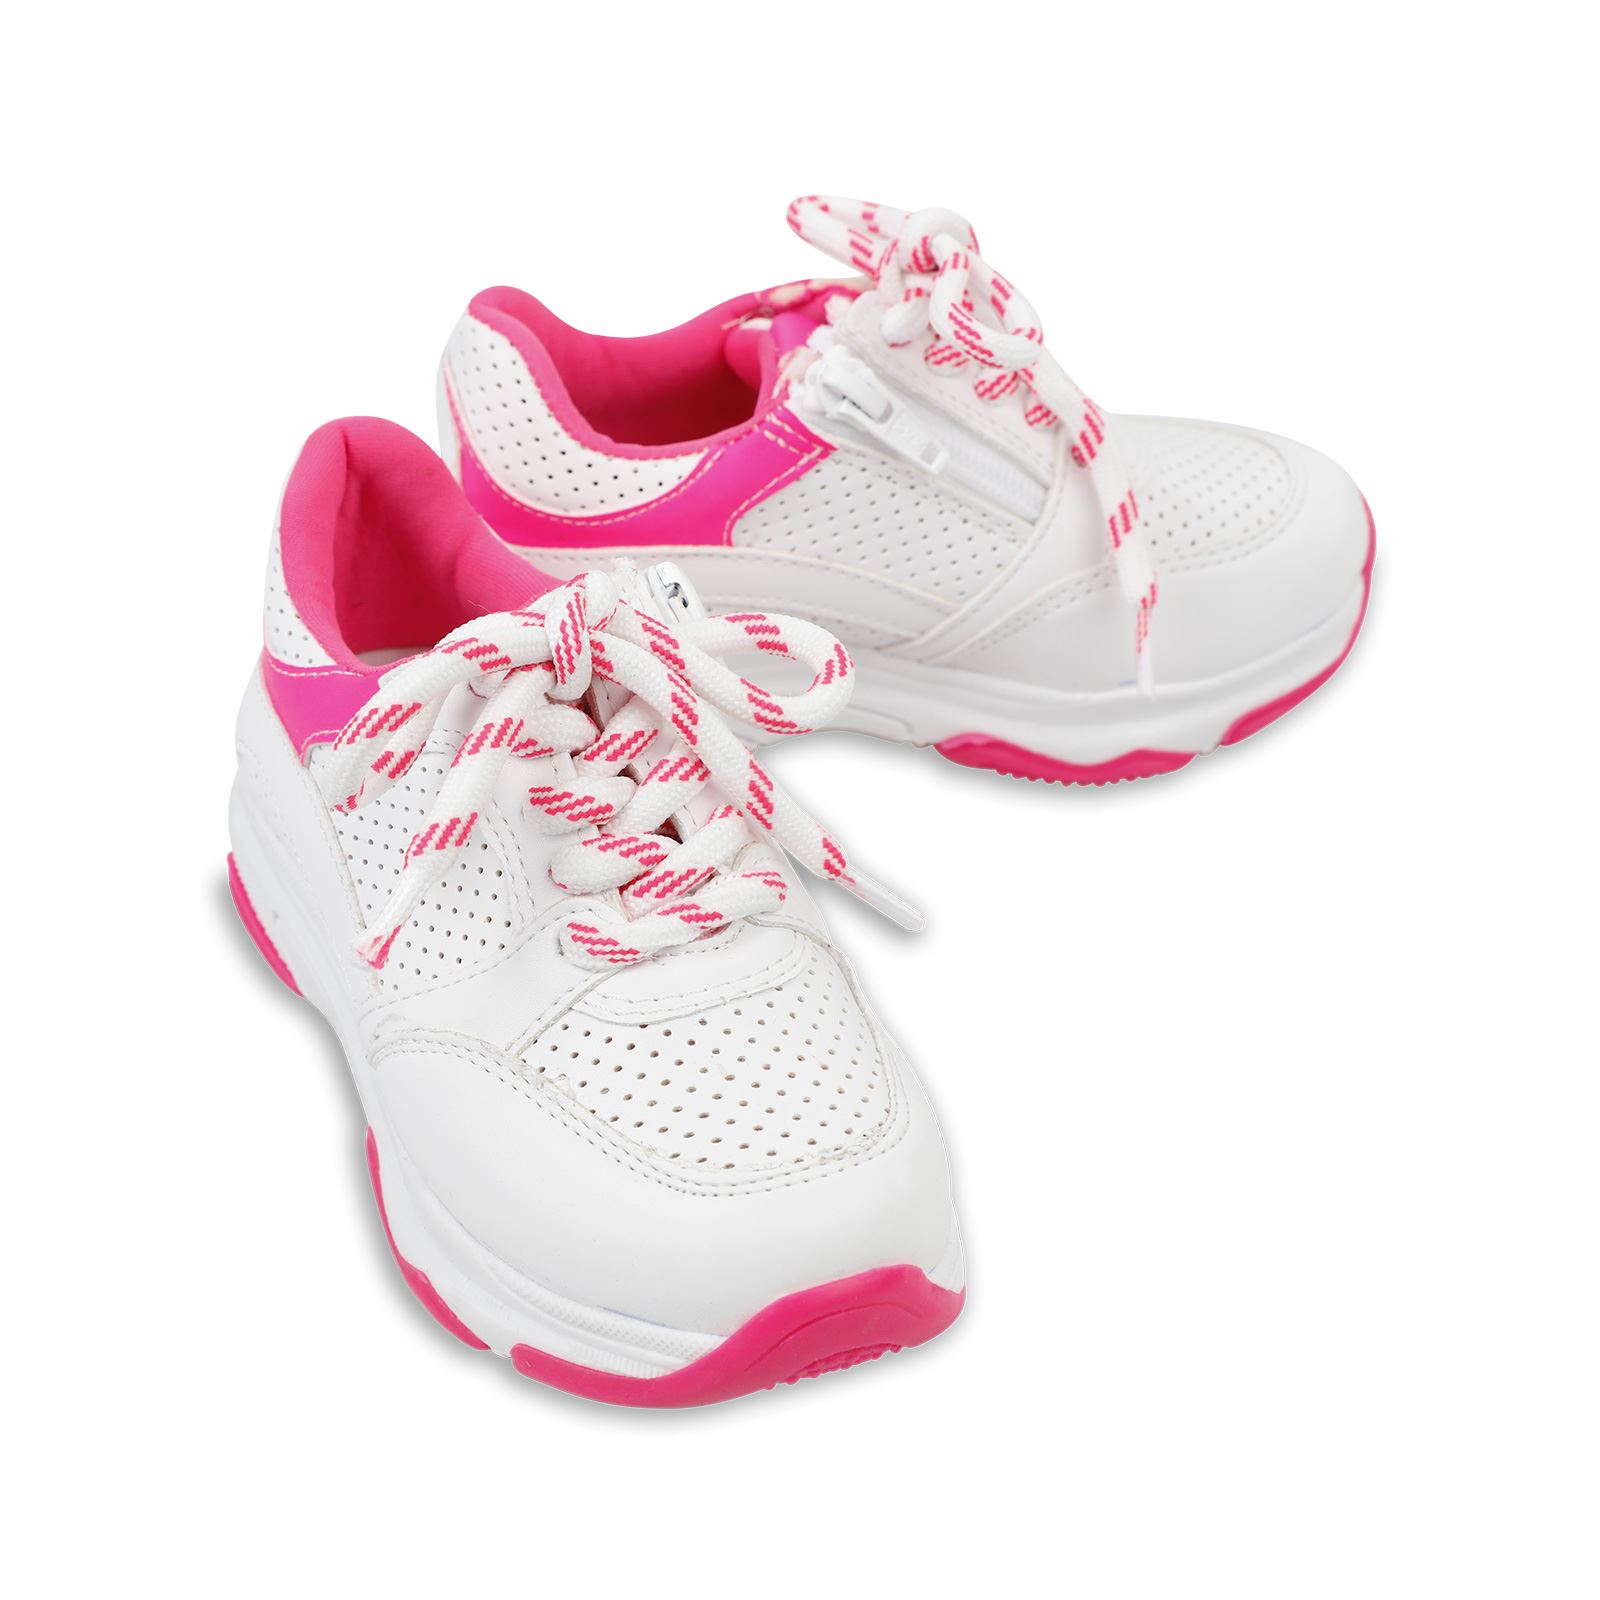 Harli Kız Çocuk Spor Ayakkabı 31-35 Numara Beyaz-Fuşya